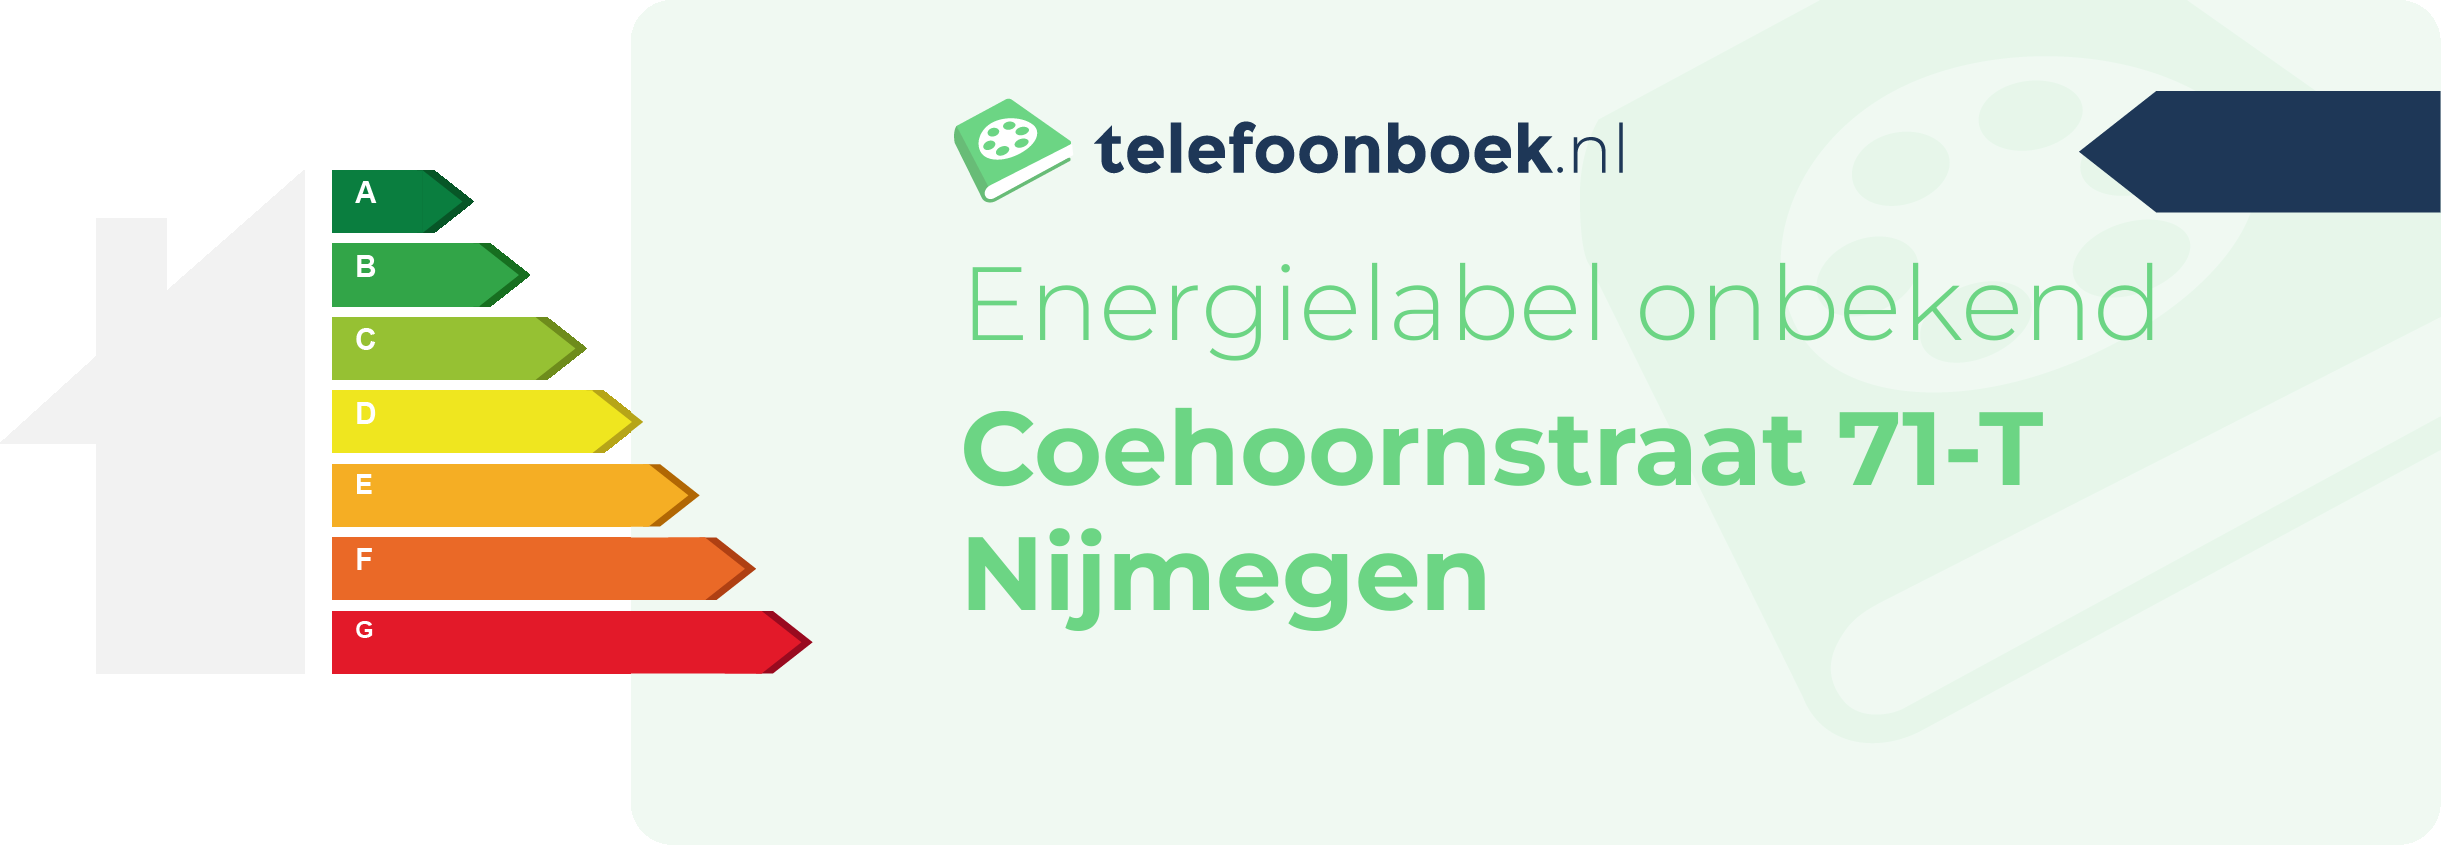 Energielabel Coehoornstraat 71-T Nijmegen